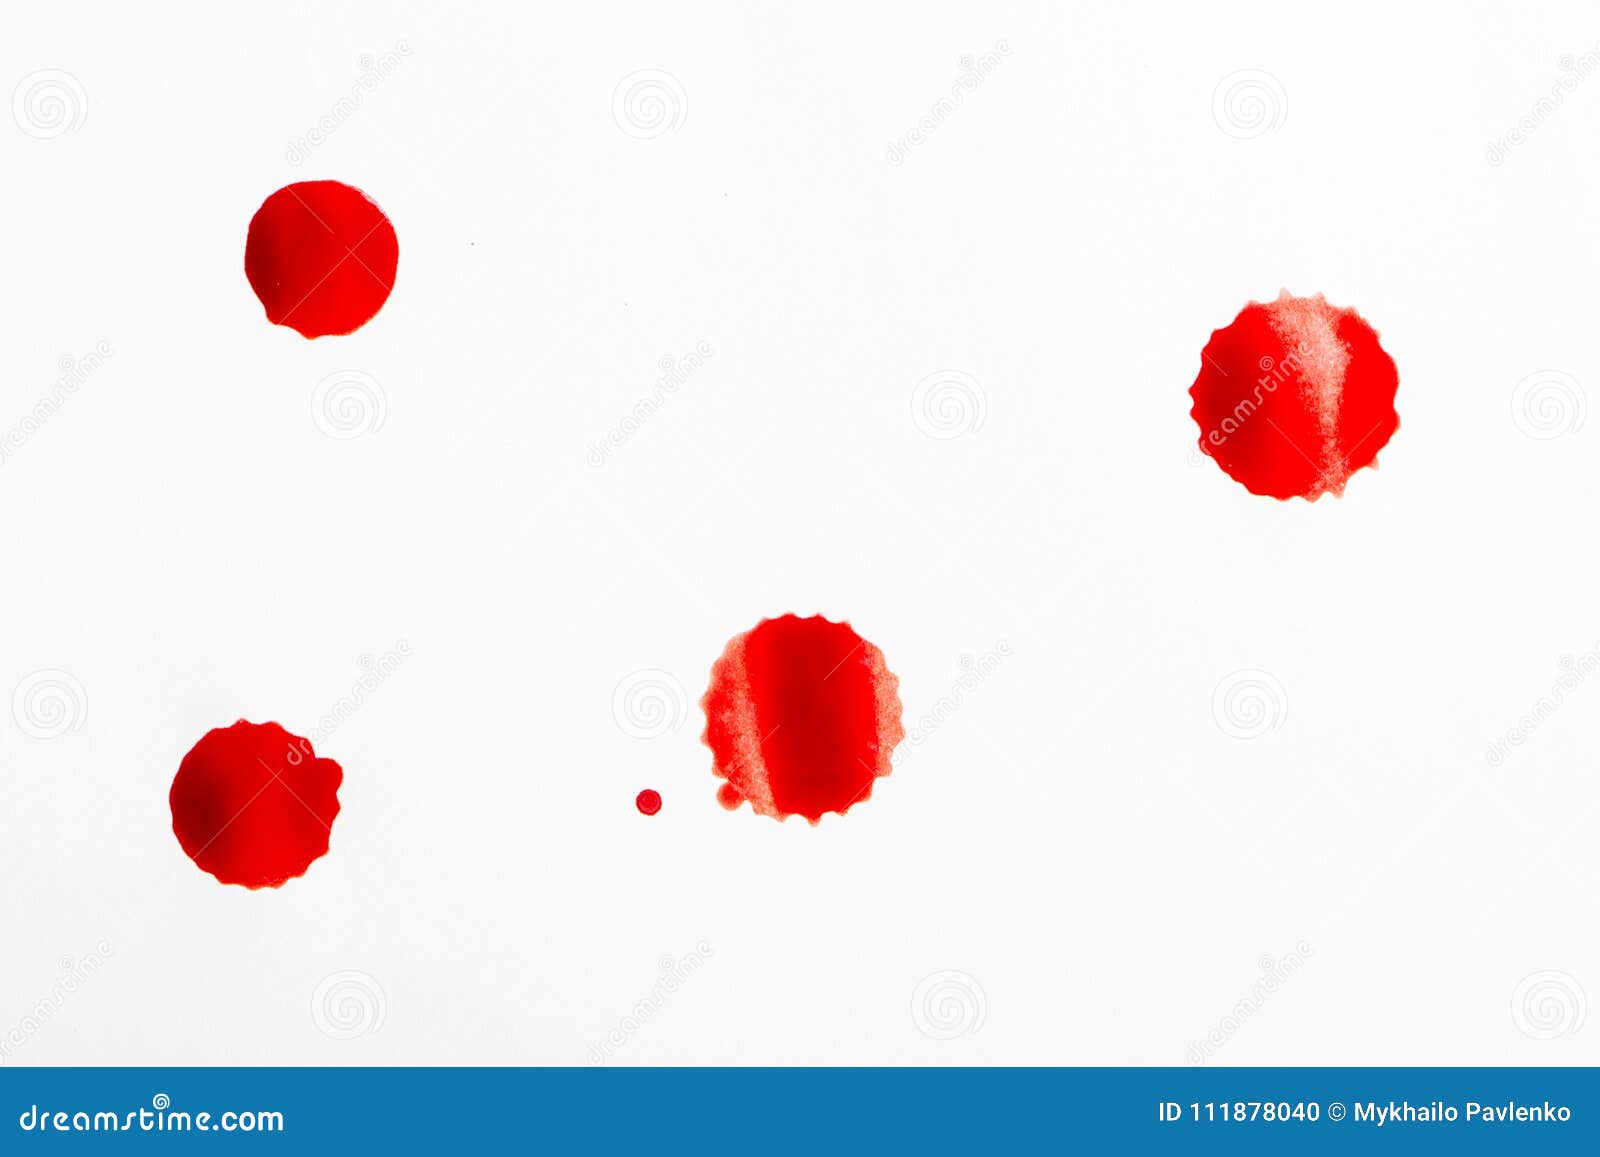 После стула крови на туалетной бумаге. Алая кровь на туалетной бумаге. Красная кровь на туалетной бумаге.